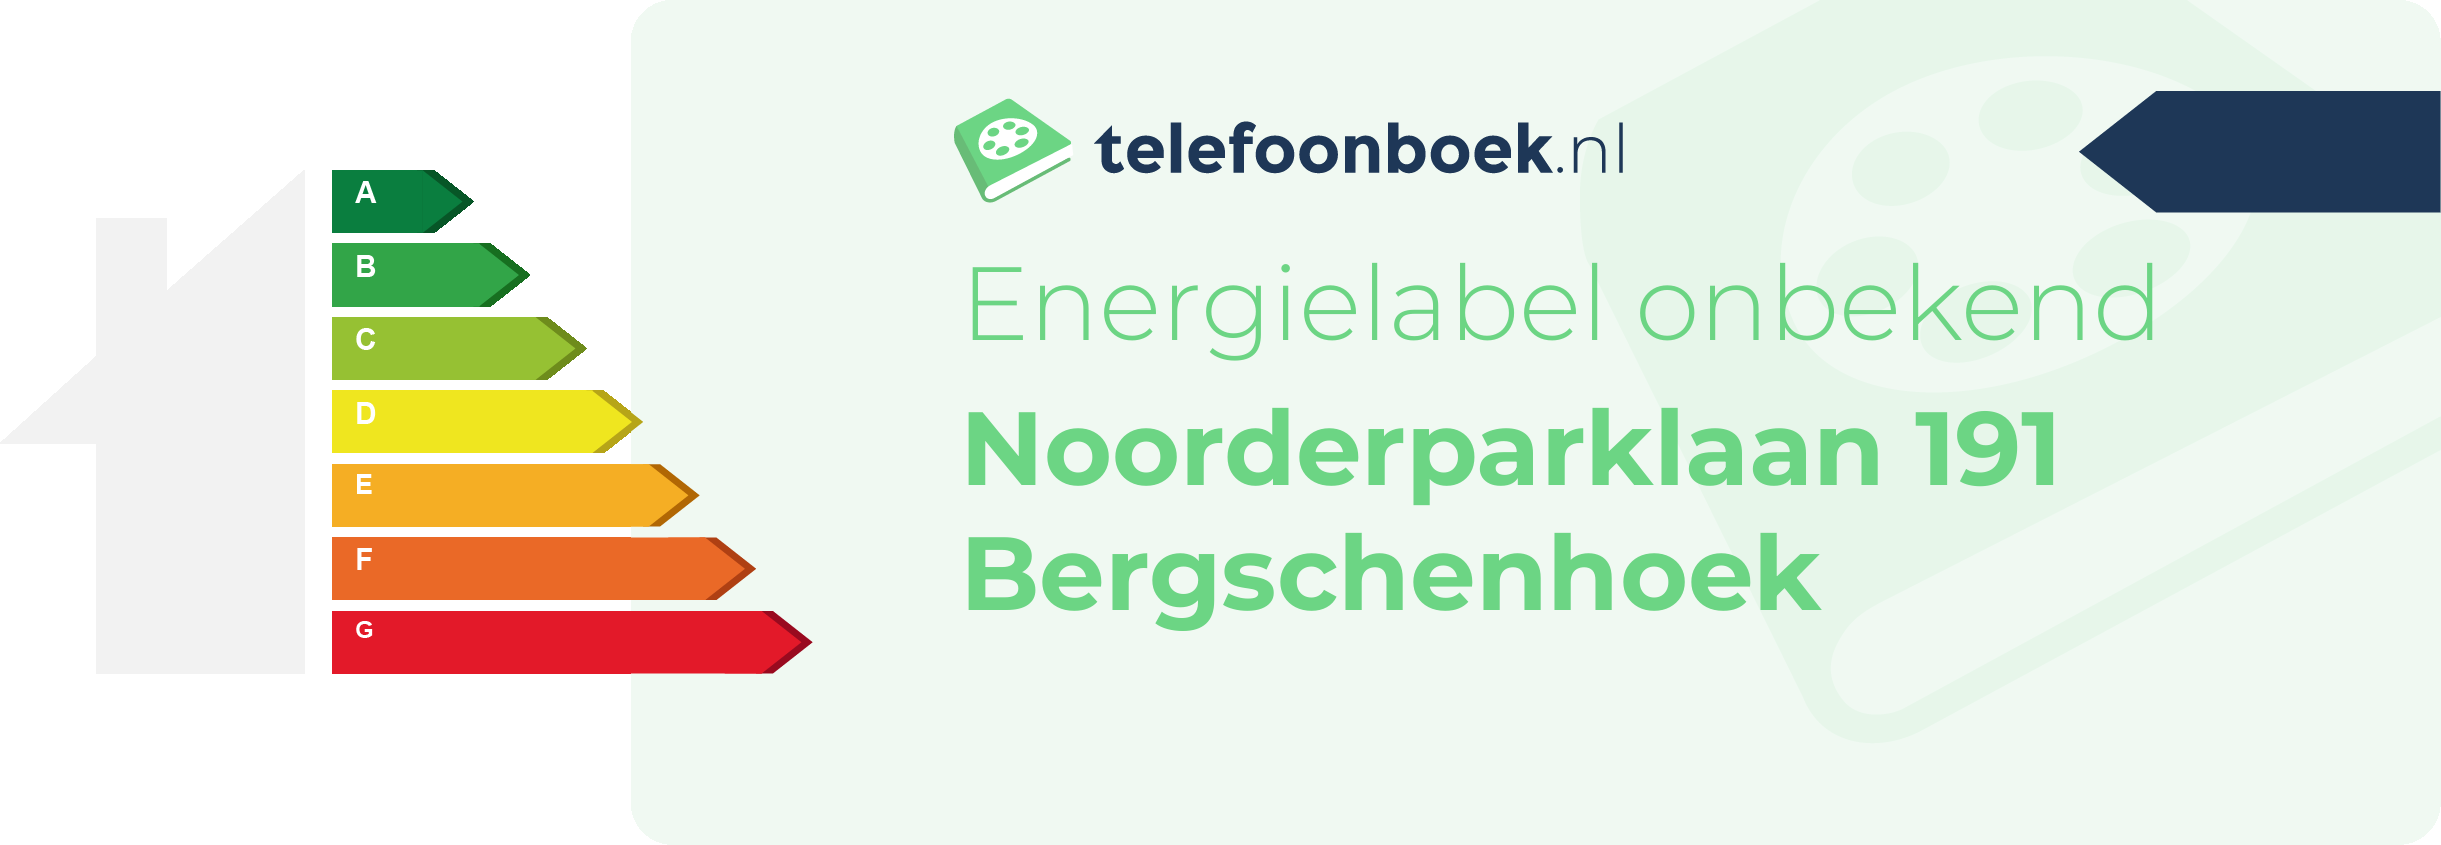 Energielabel Noorderparklaan 191 Bergschenhoek